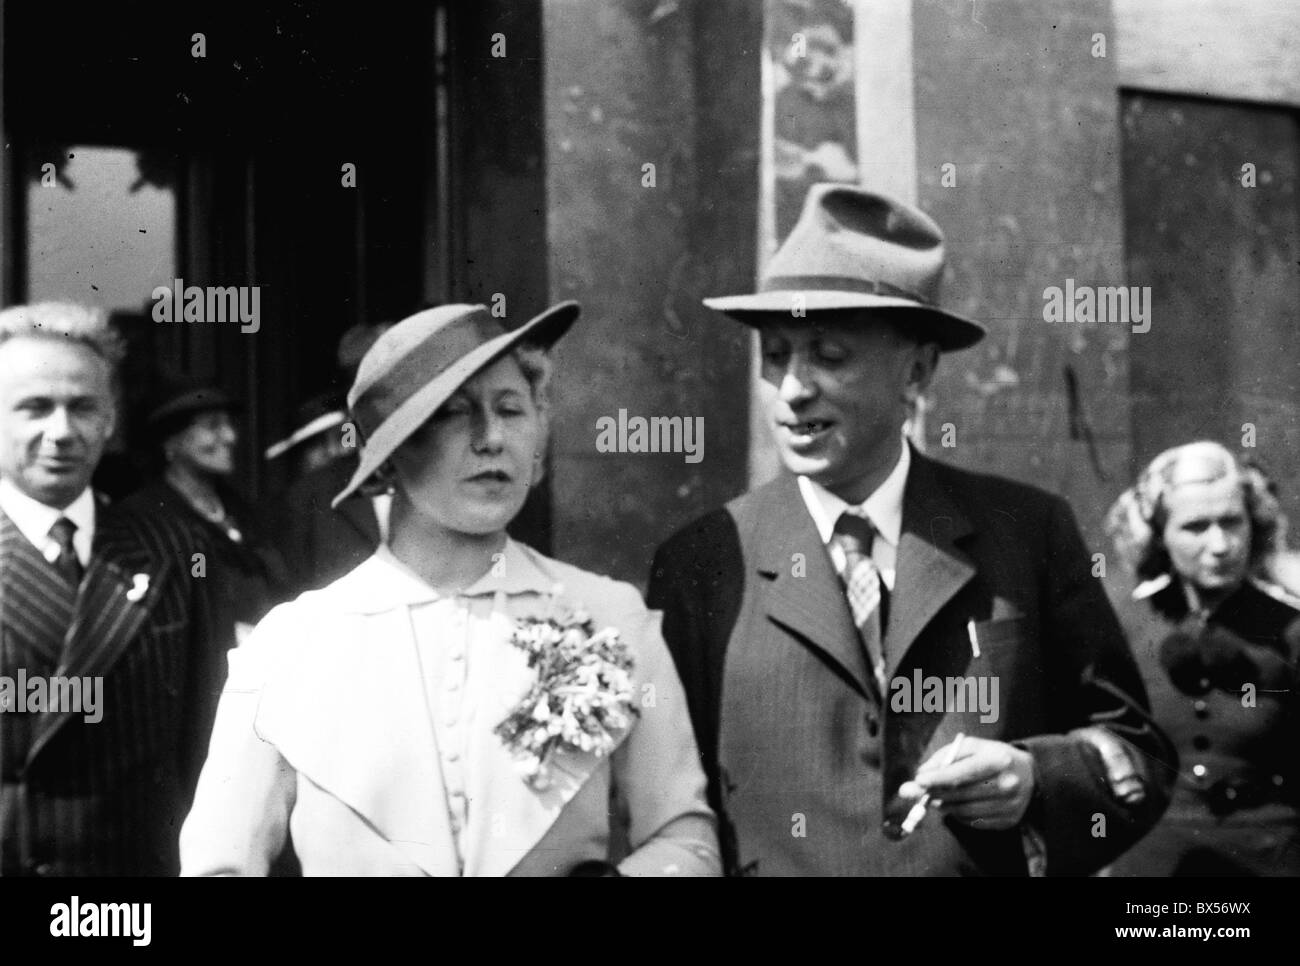 Tschechoslowakei 1935, Welt berühmten Schriftstellers und Dramatikers Karel  Capek, rechts, bei seiner Hochzeit mit der Schauspielerin Olga  Scheinpflugova Stockfotografie - Alamy